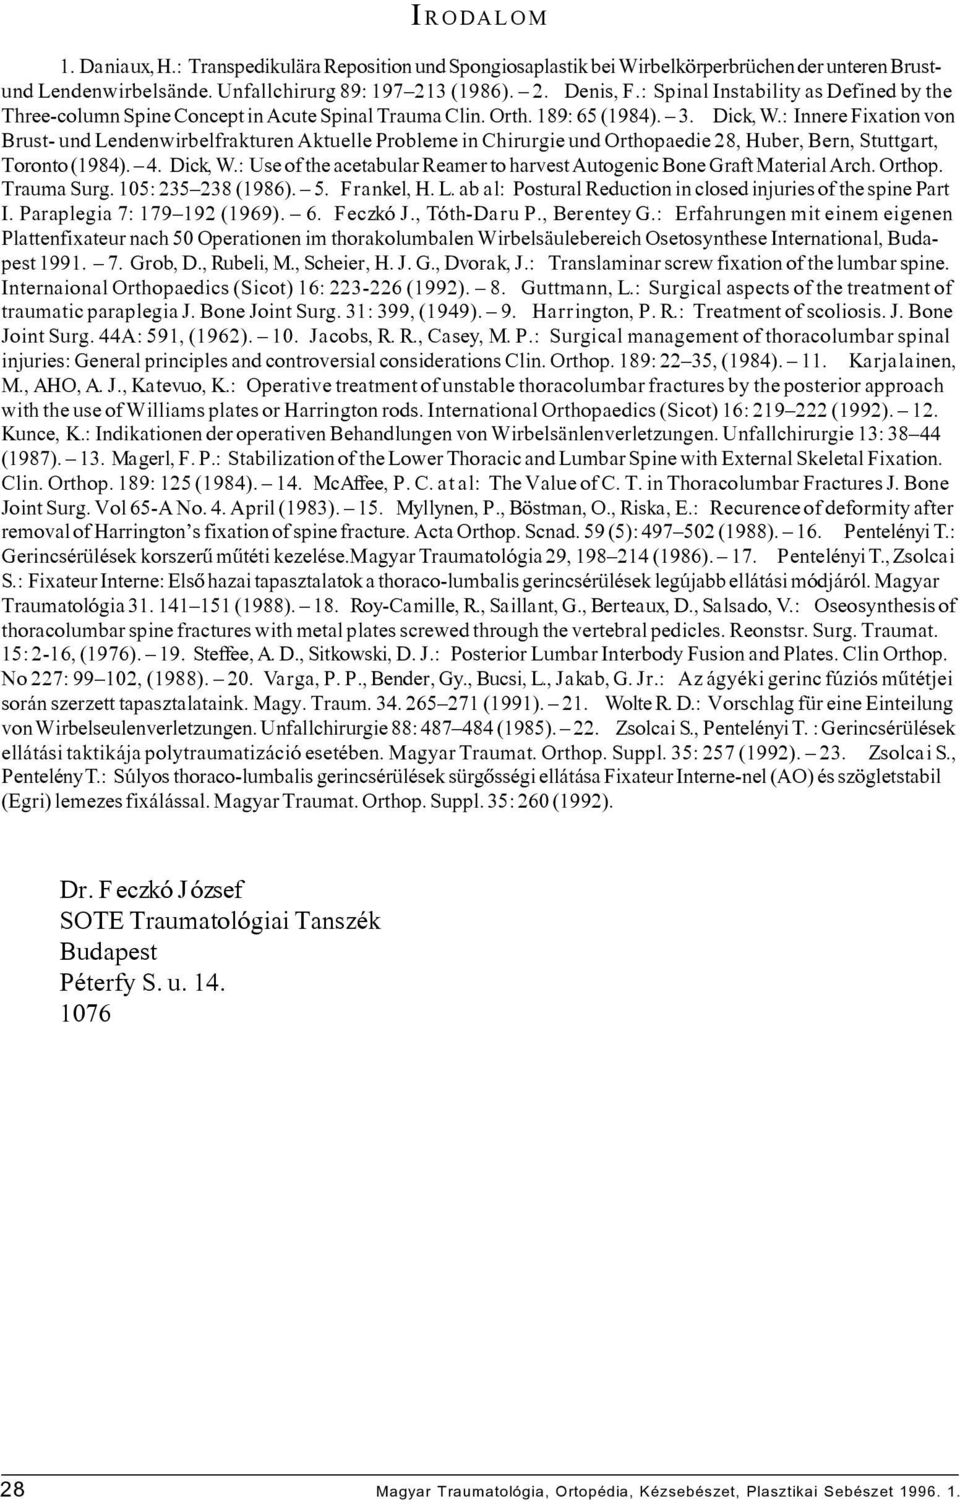 : Innere Fixation von Brust- und Lendenwirbelfrakturen Aktuelle Probleme in Chirurgie und Orthopaedie 28, Huber, Bern, Stuttgart, Toronto (1984). 4. Dick, W.